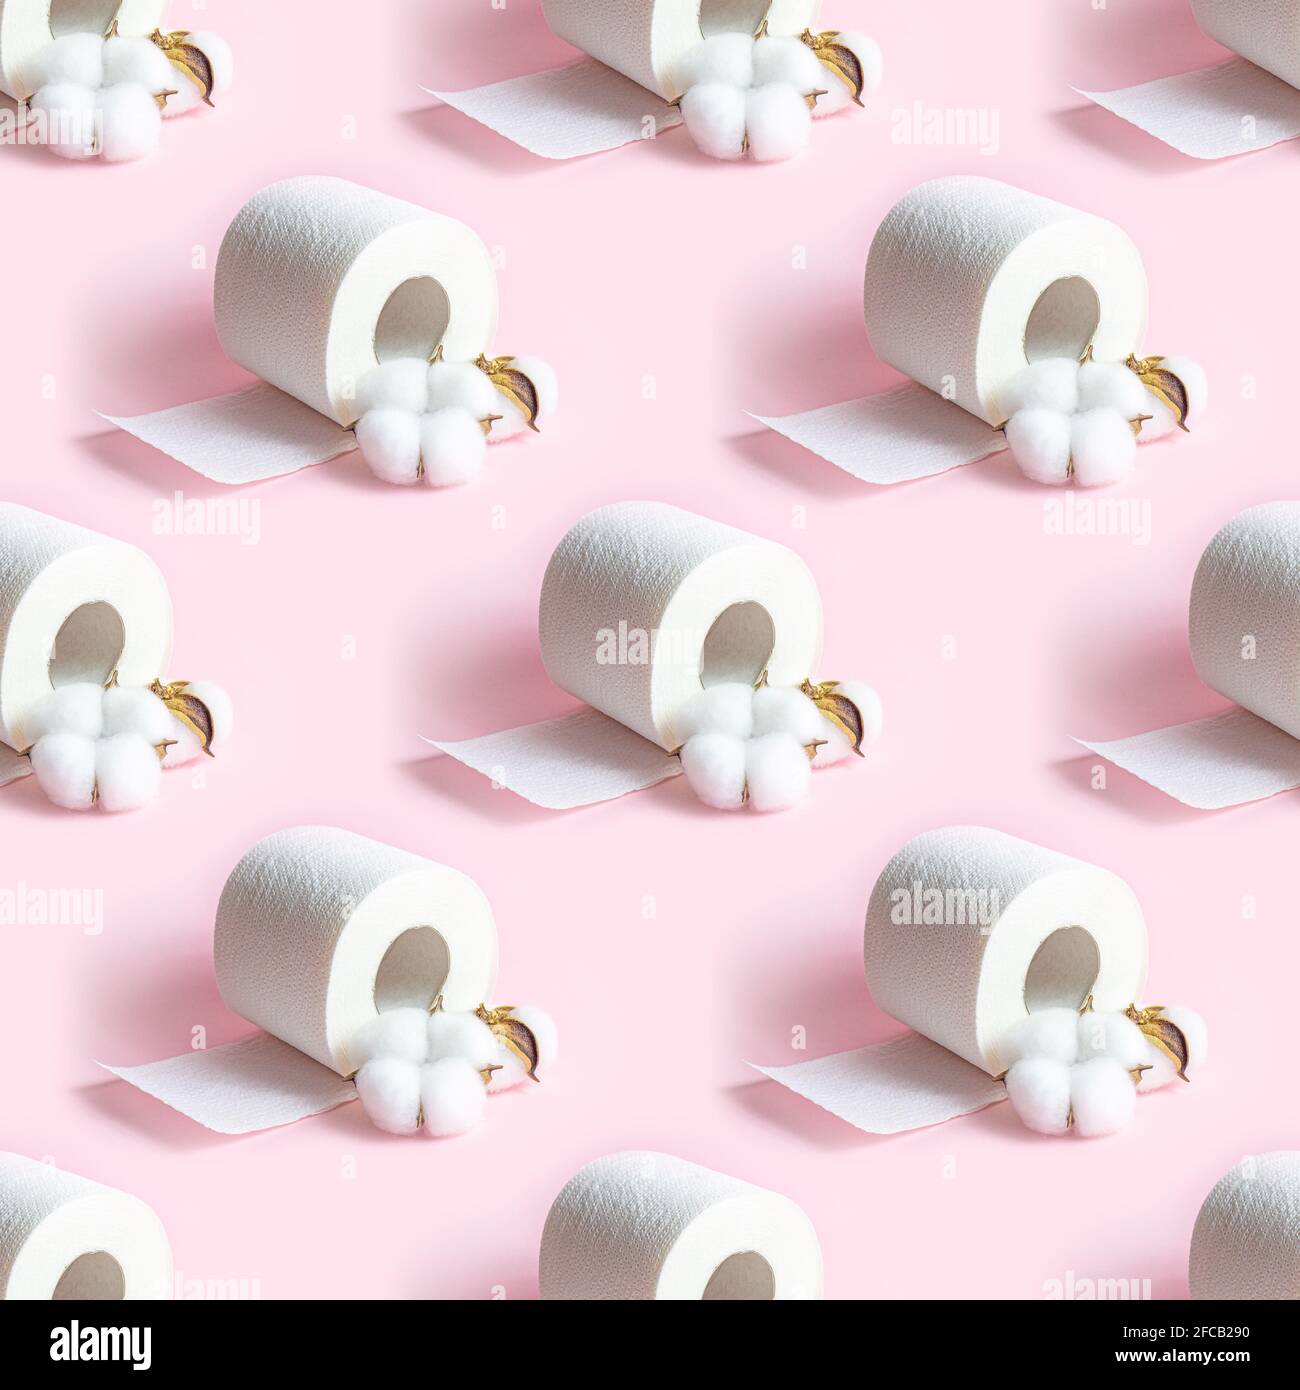 Il rotolo di carta igienica bianca ripete un motivo continuo su sfondo rosa chiaro. Foto Stock